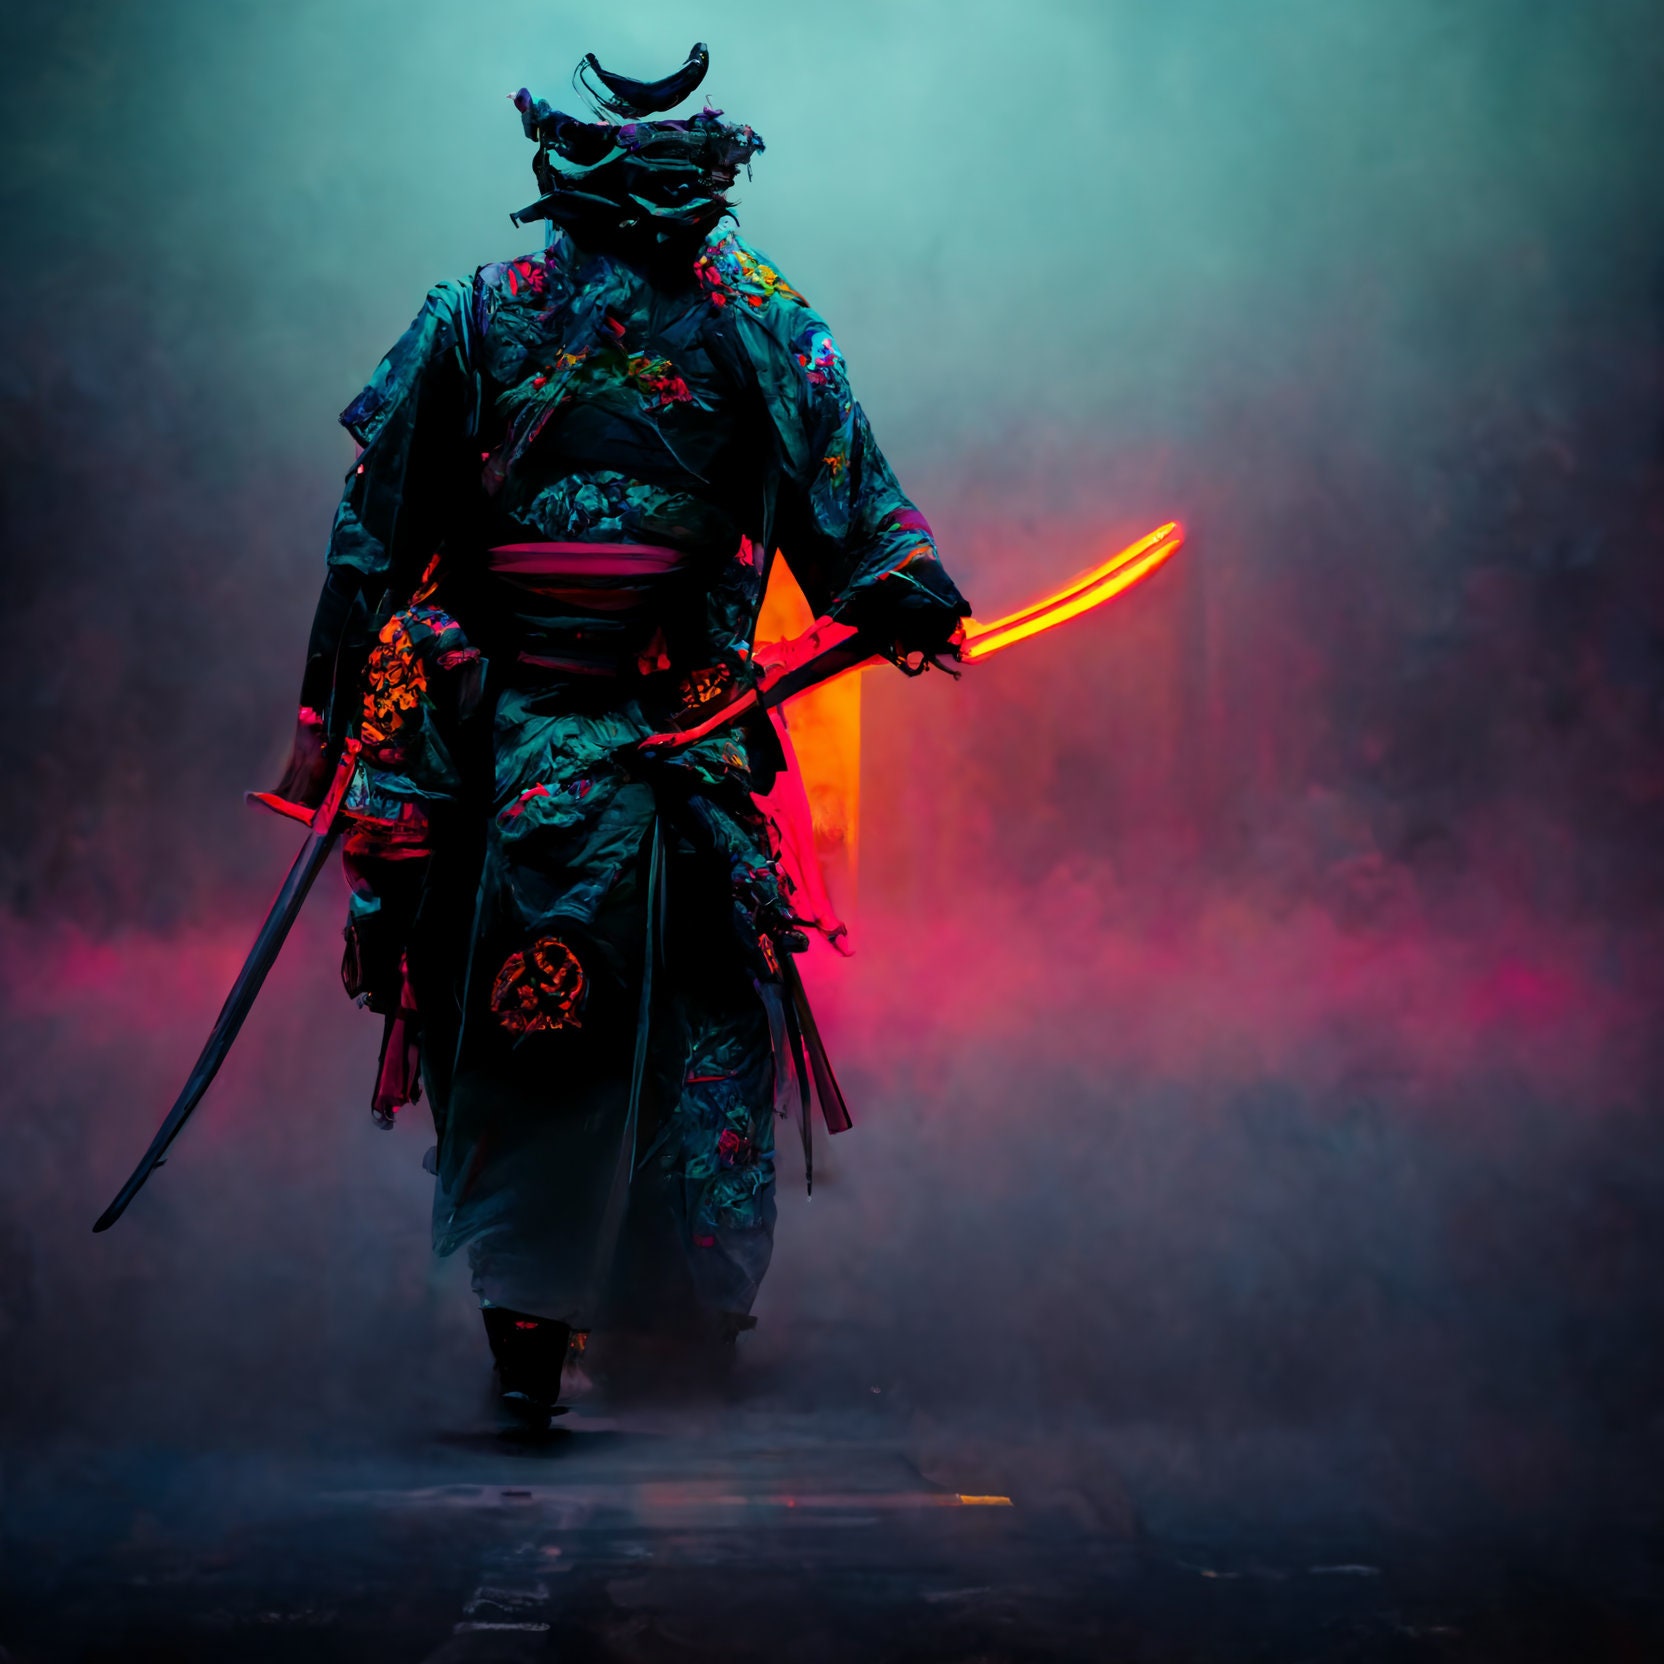 Neon samurai cyberpunk resolution HD wallpapers  Pxfuel